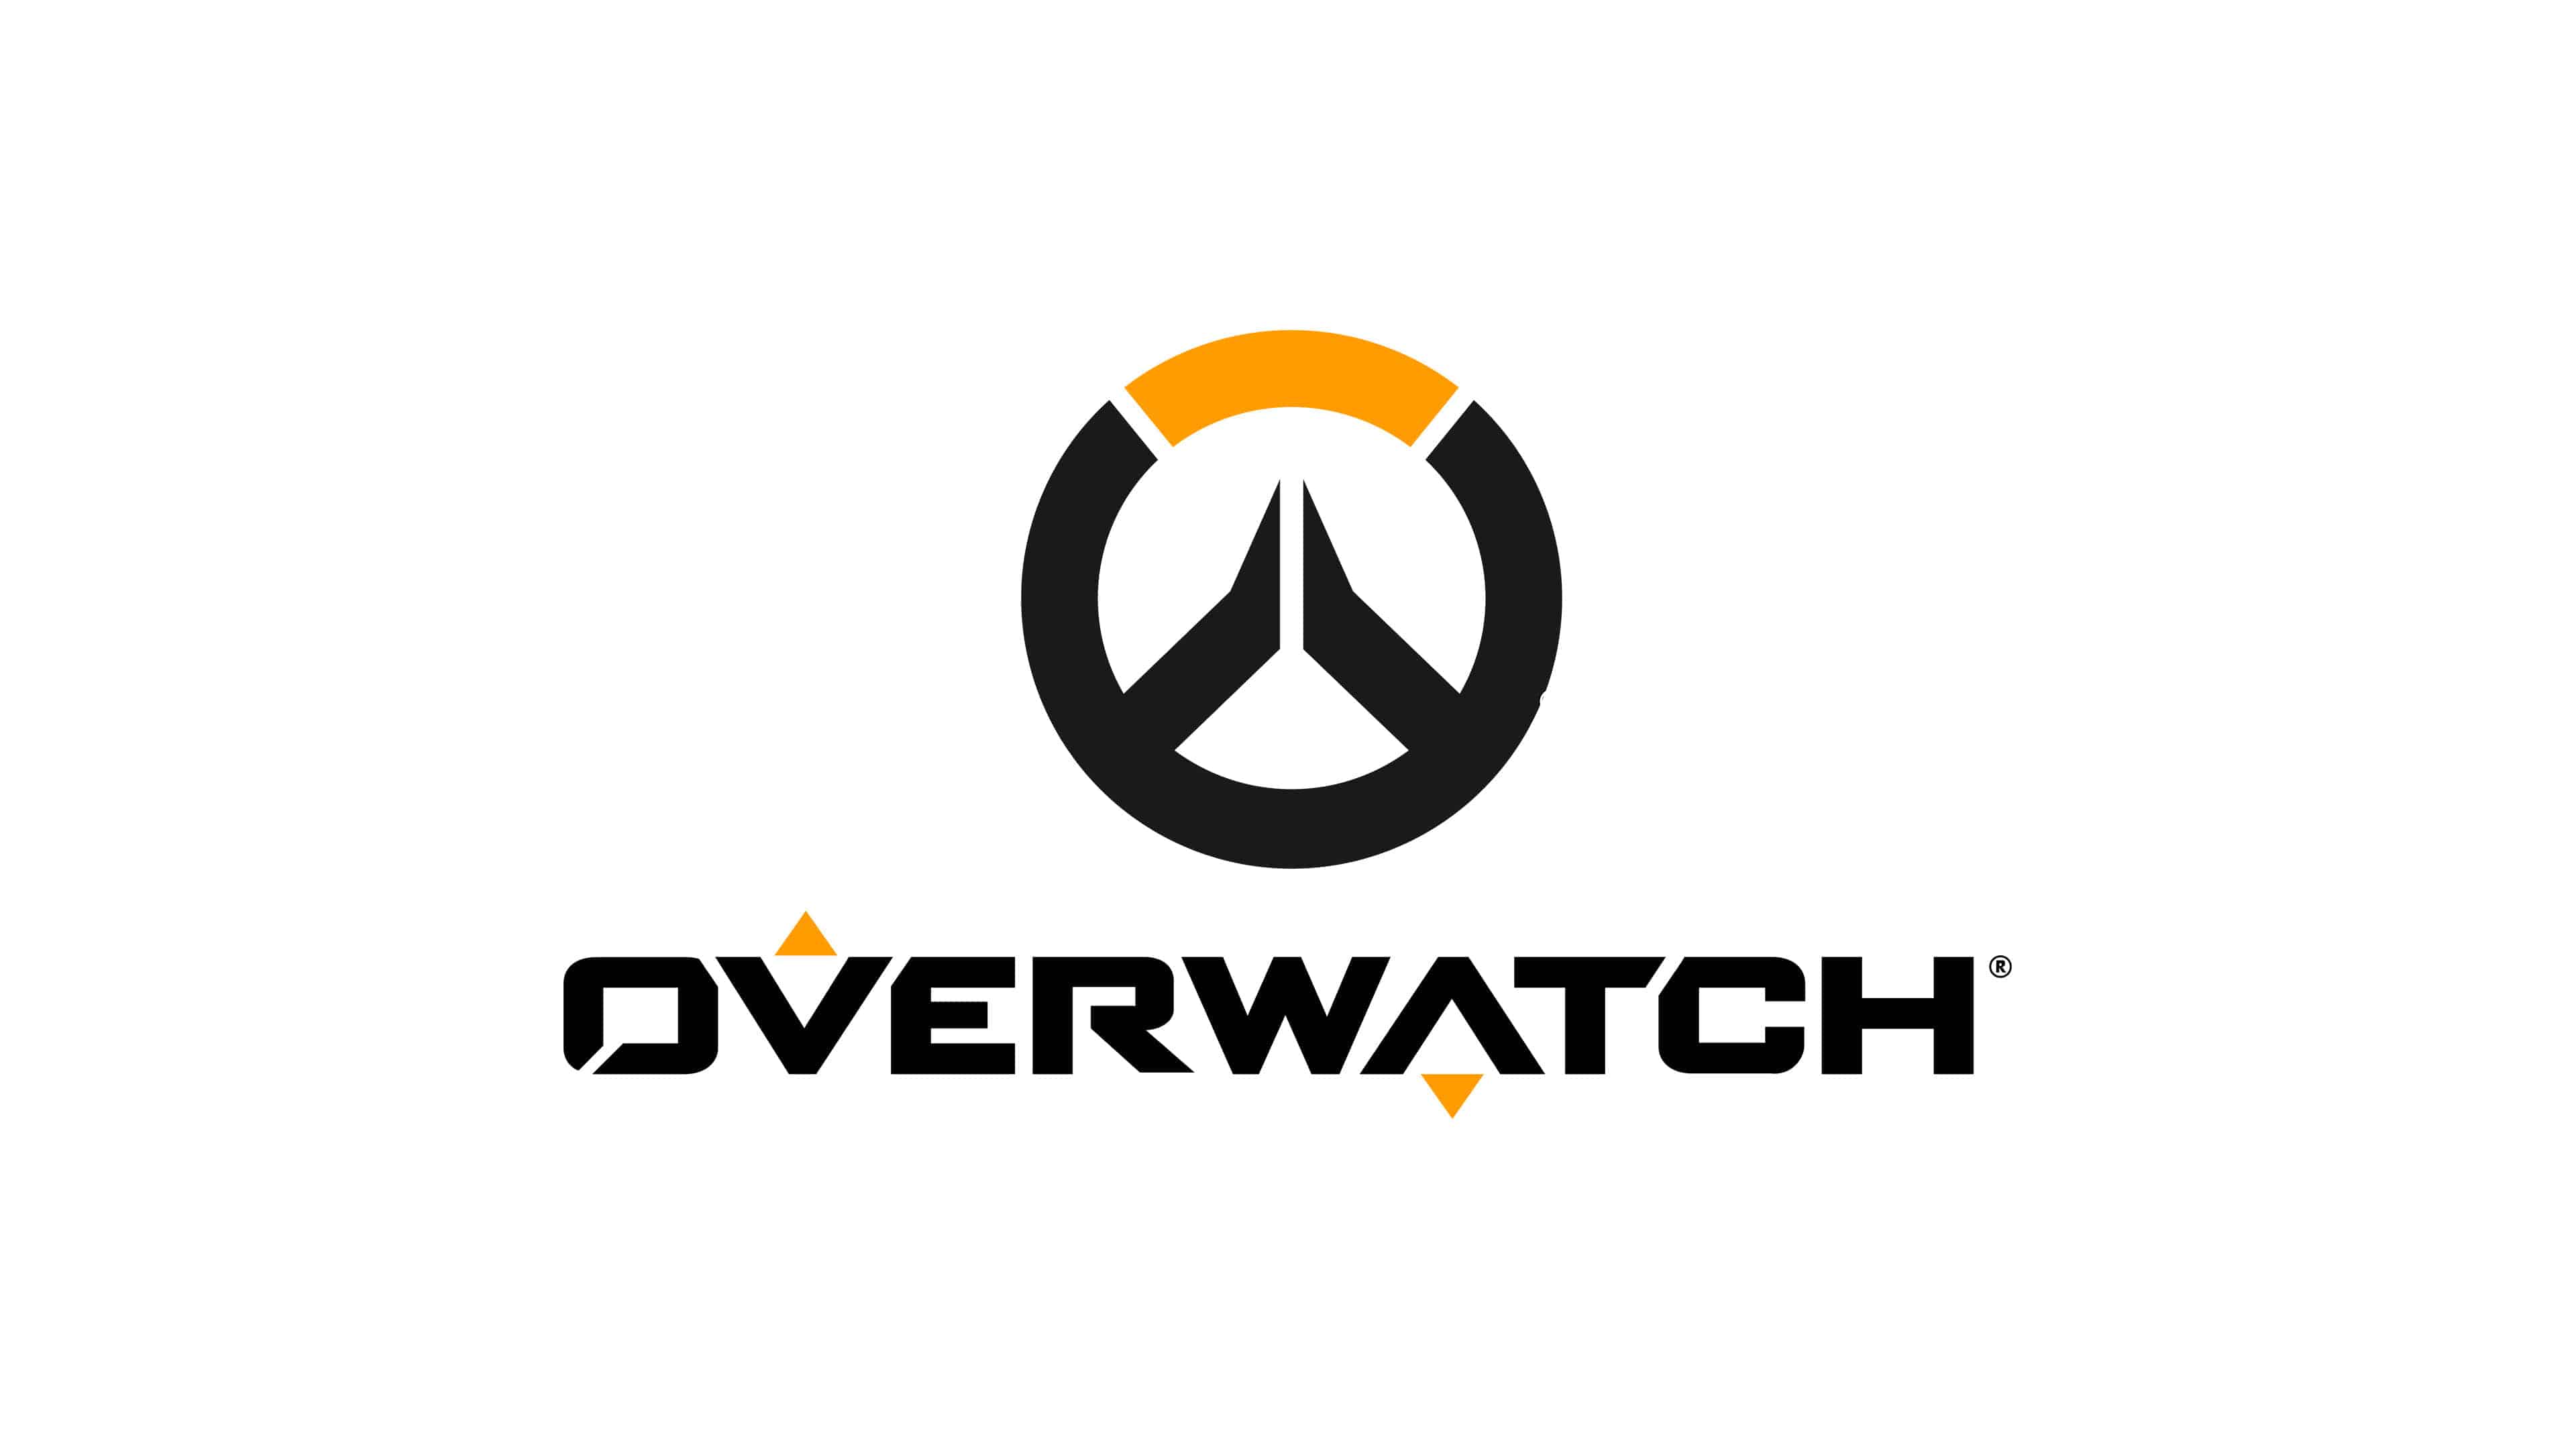 Free download Overwatch Logo UHD 4K Wallpaper Pixelz [3840x2160] for your Desktop, Mobile & Tablet. Explore Overwatch Logo Wallpaper. Overwatch Logo Wallpaper, Overwatch Wallpaper, Overwatch 4K Wallpaper